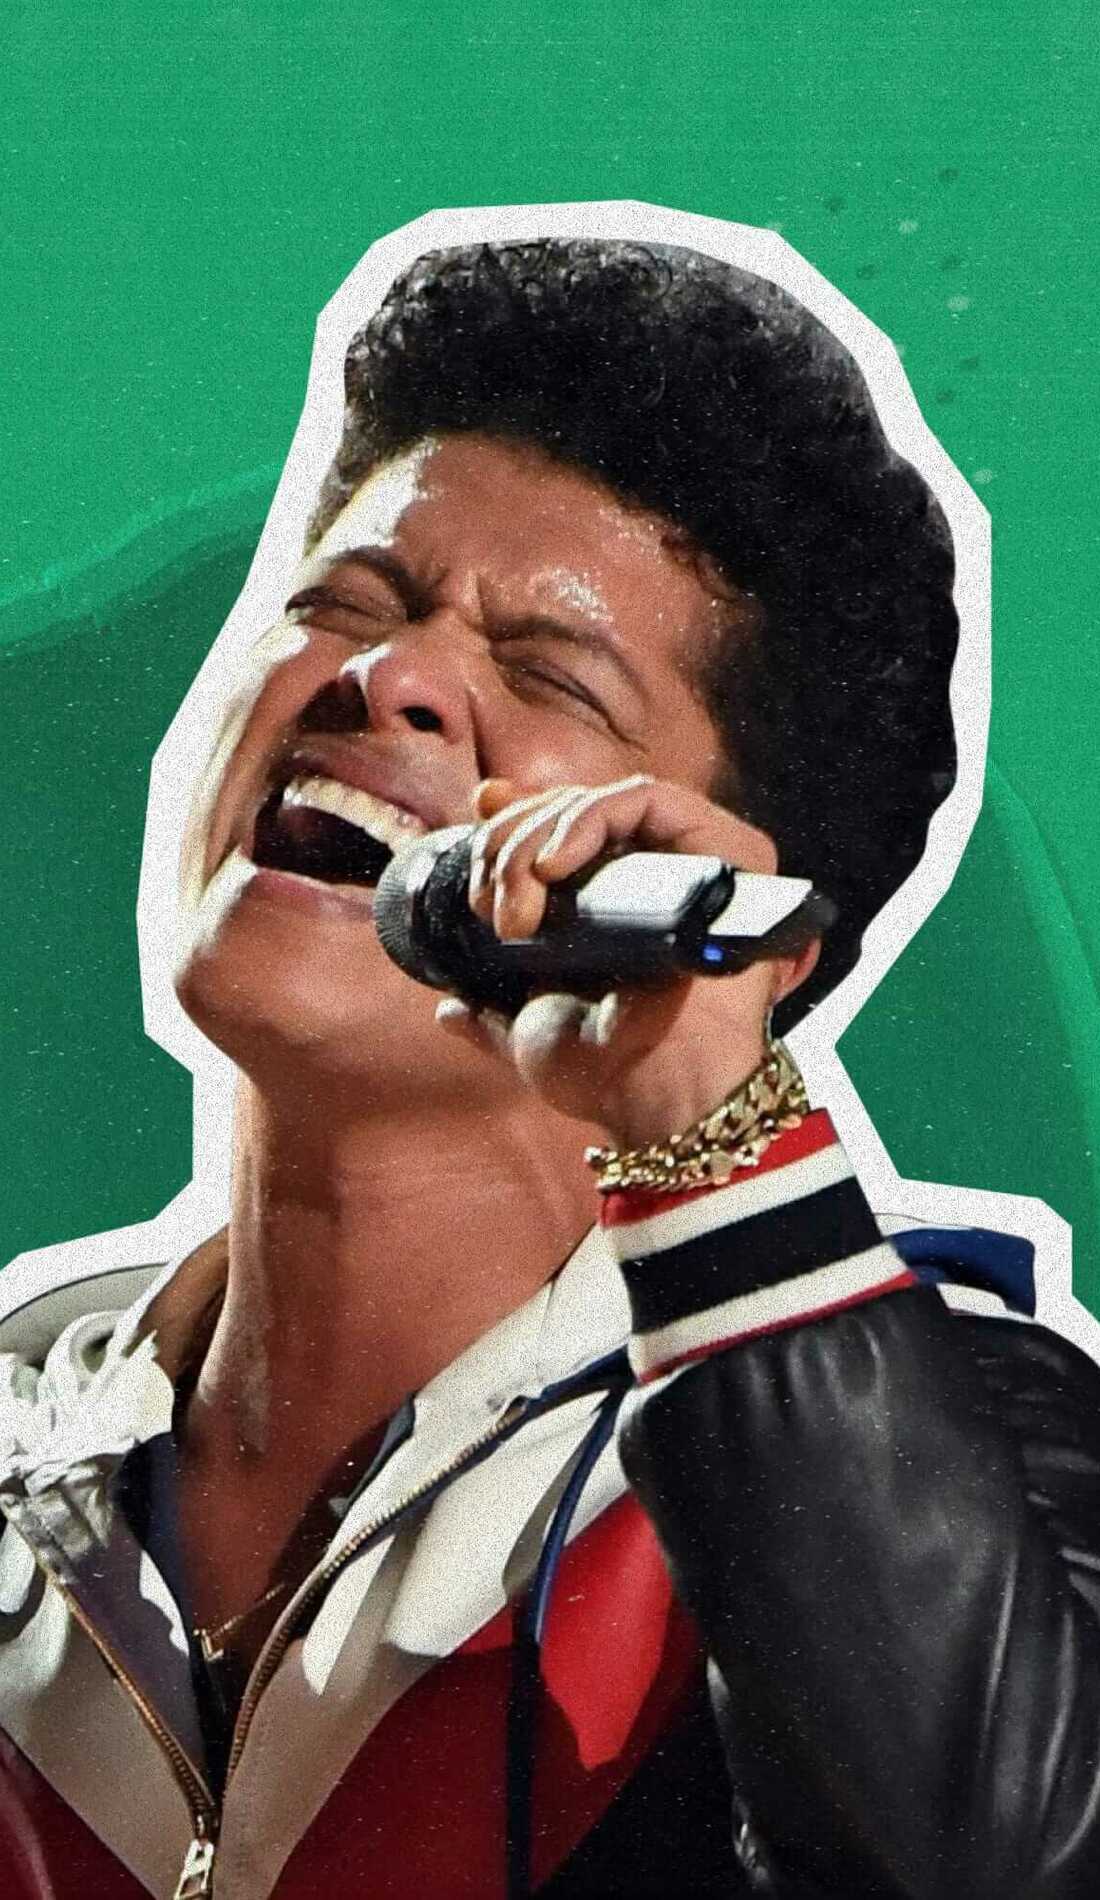 A Bruno Mars live event